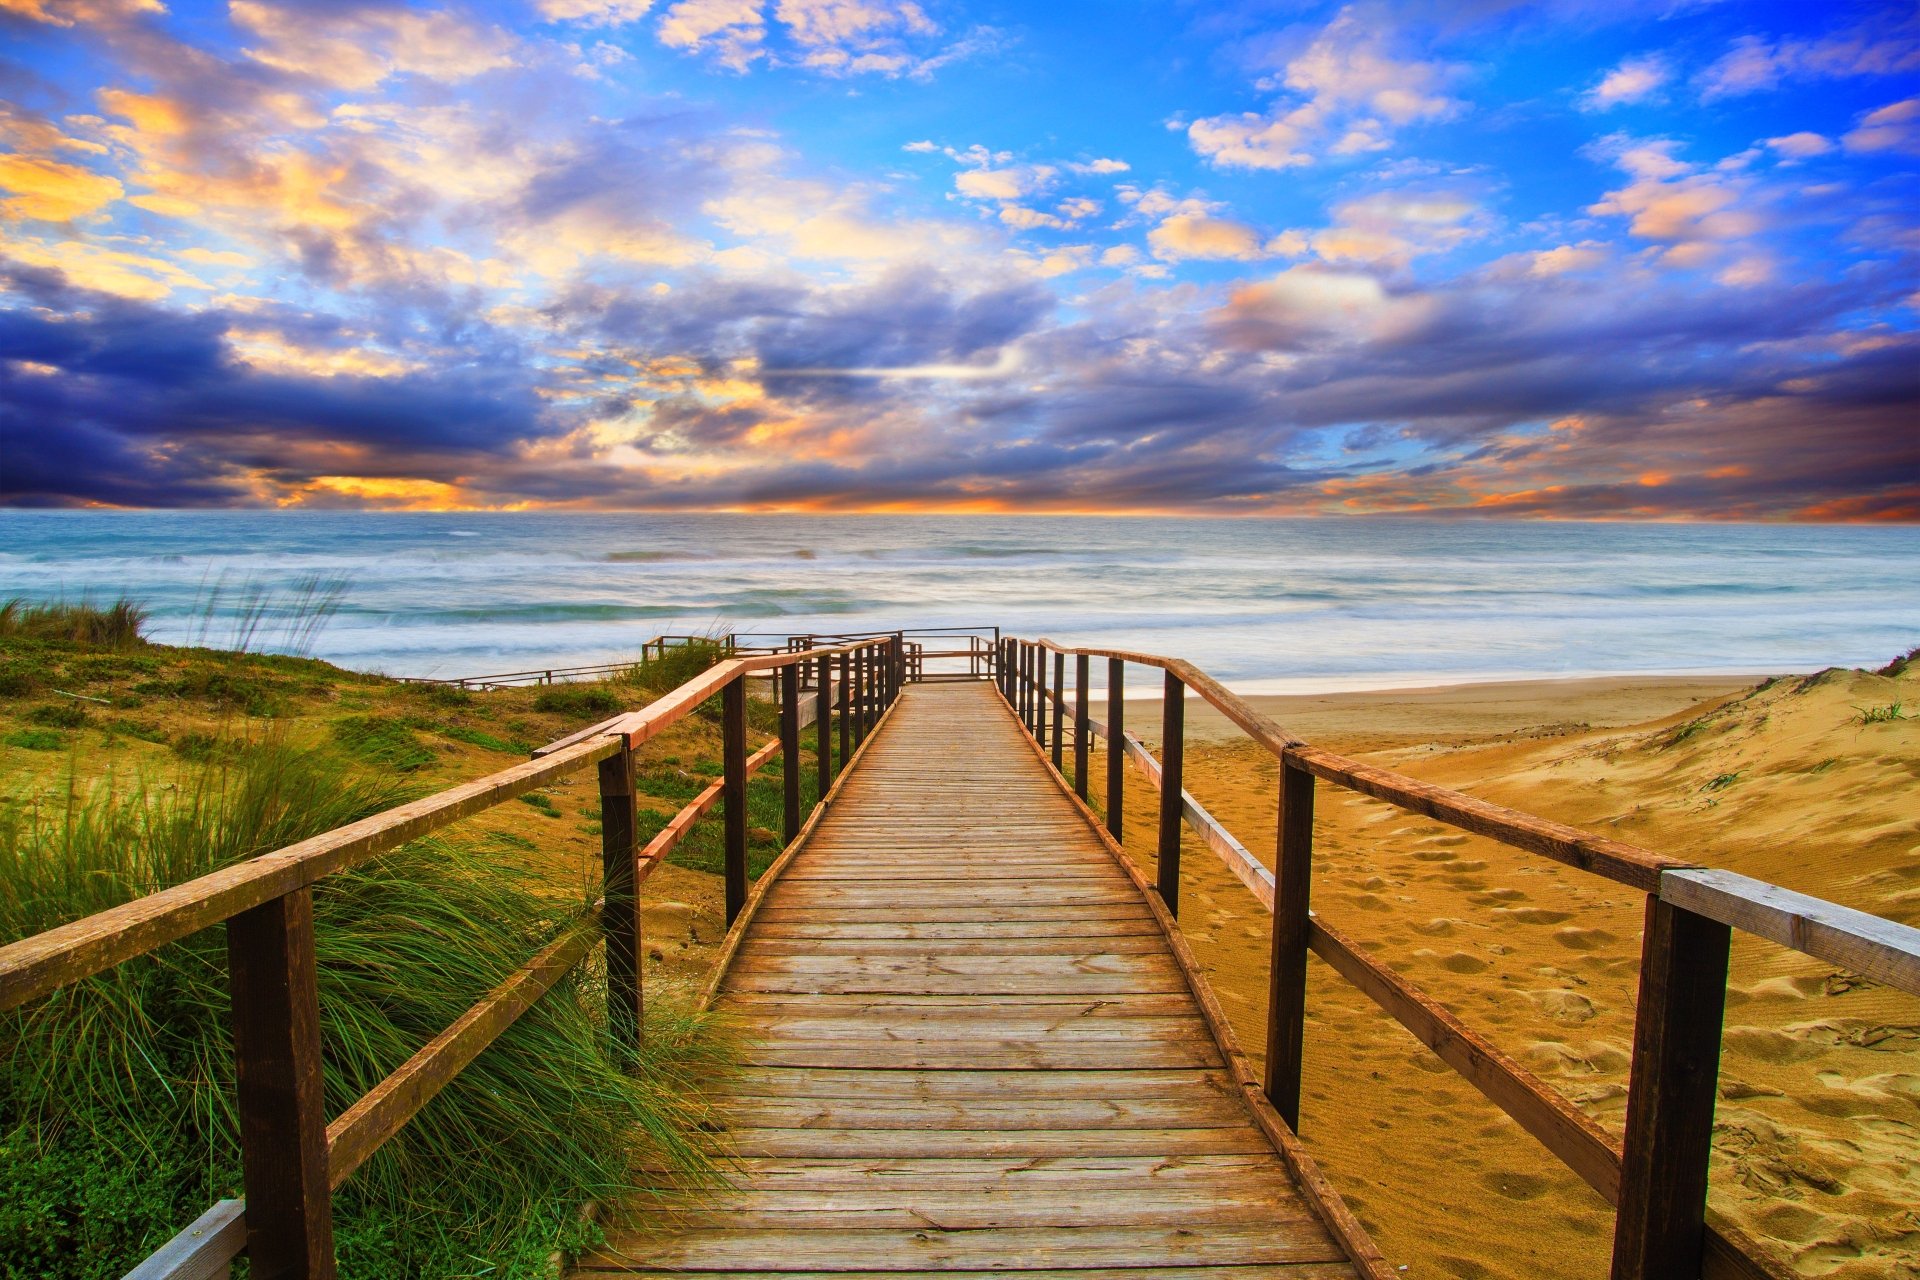 Download Horizon Sunset Ocean Beach Walkway Man Made Path  4k Ultra HD Wallpaper